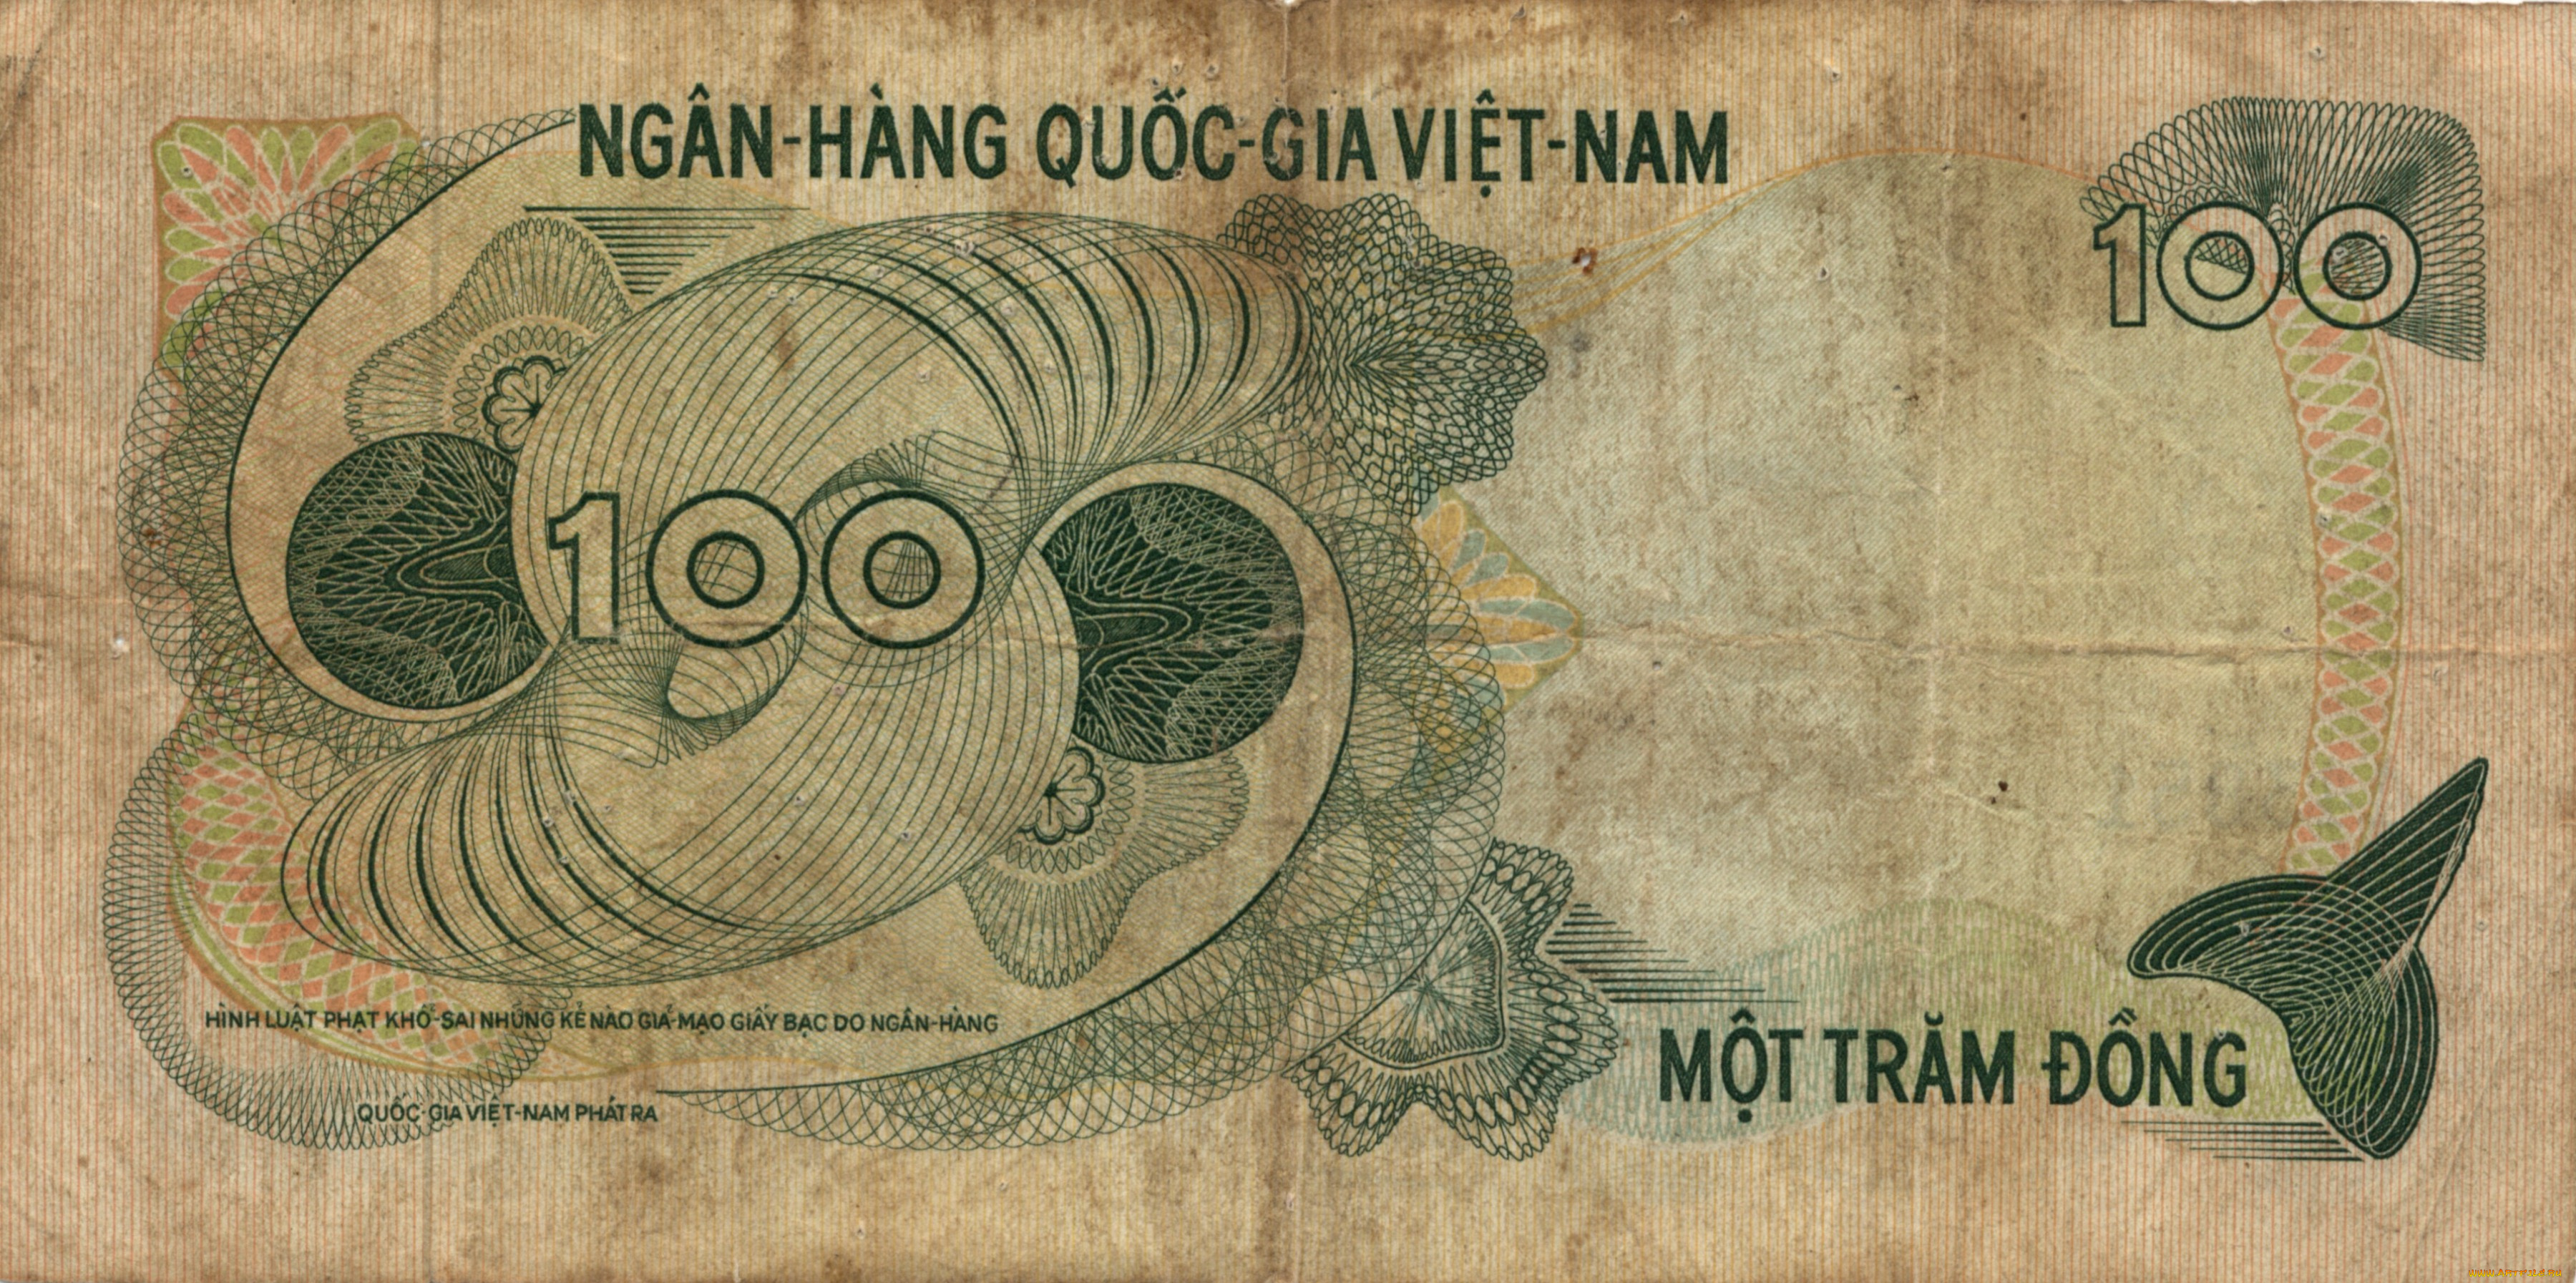 разное, золото, купюры, монеты, донг, банкнота, деньги, вьетнам